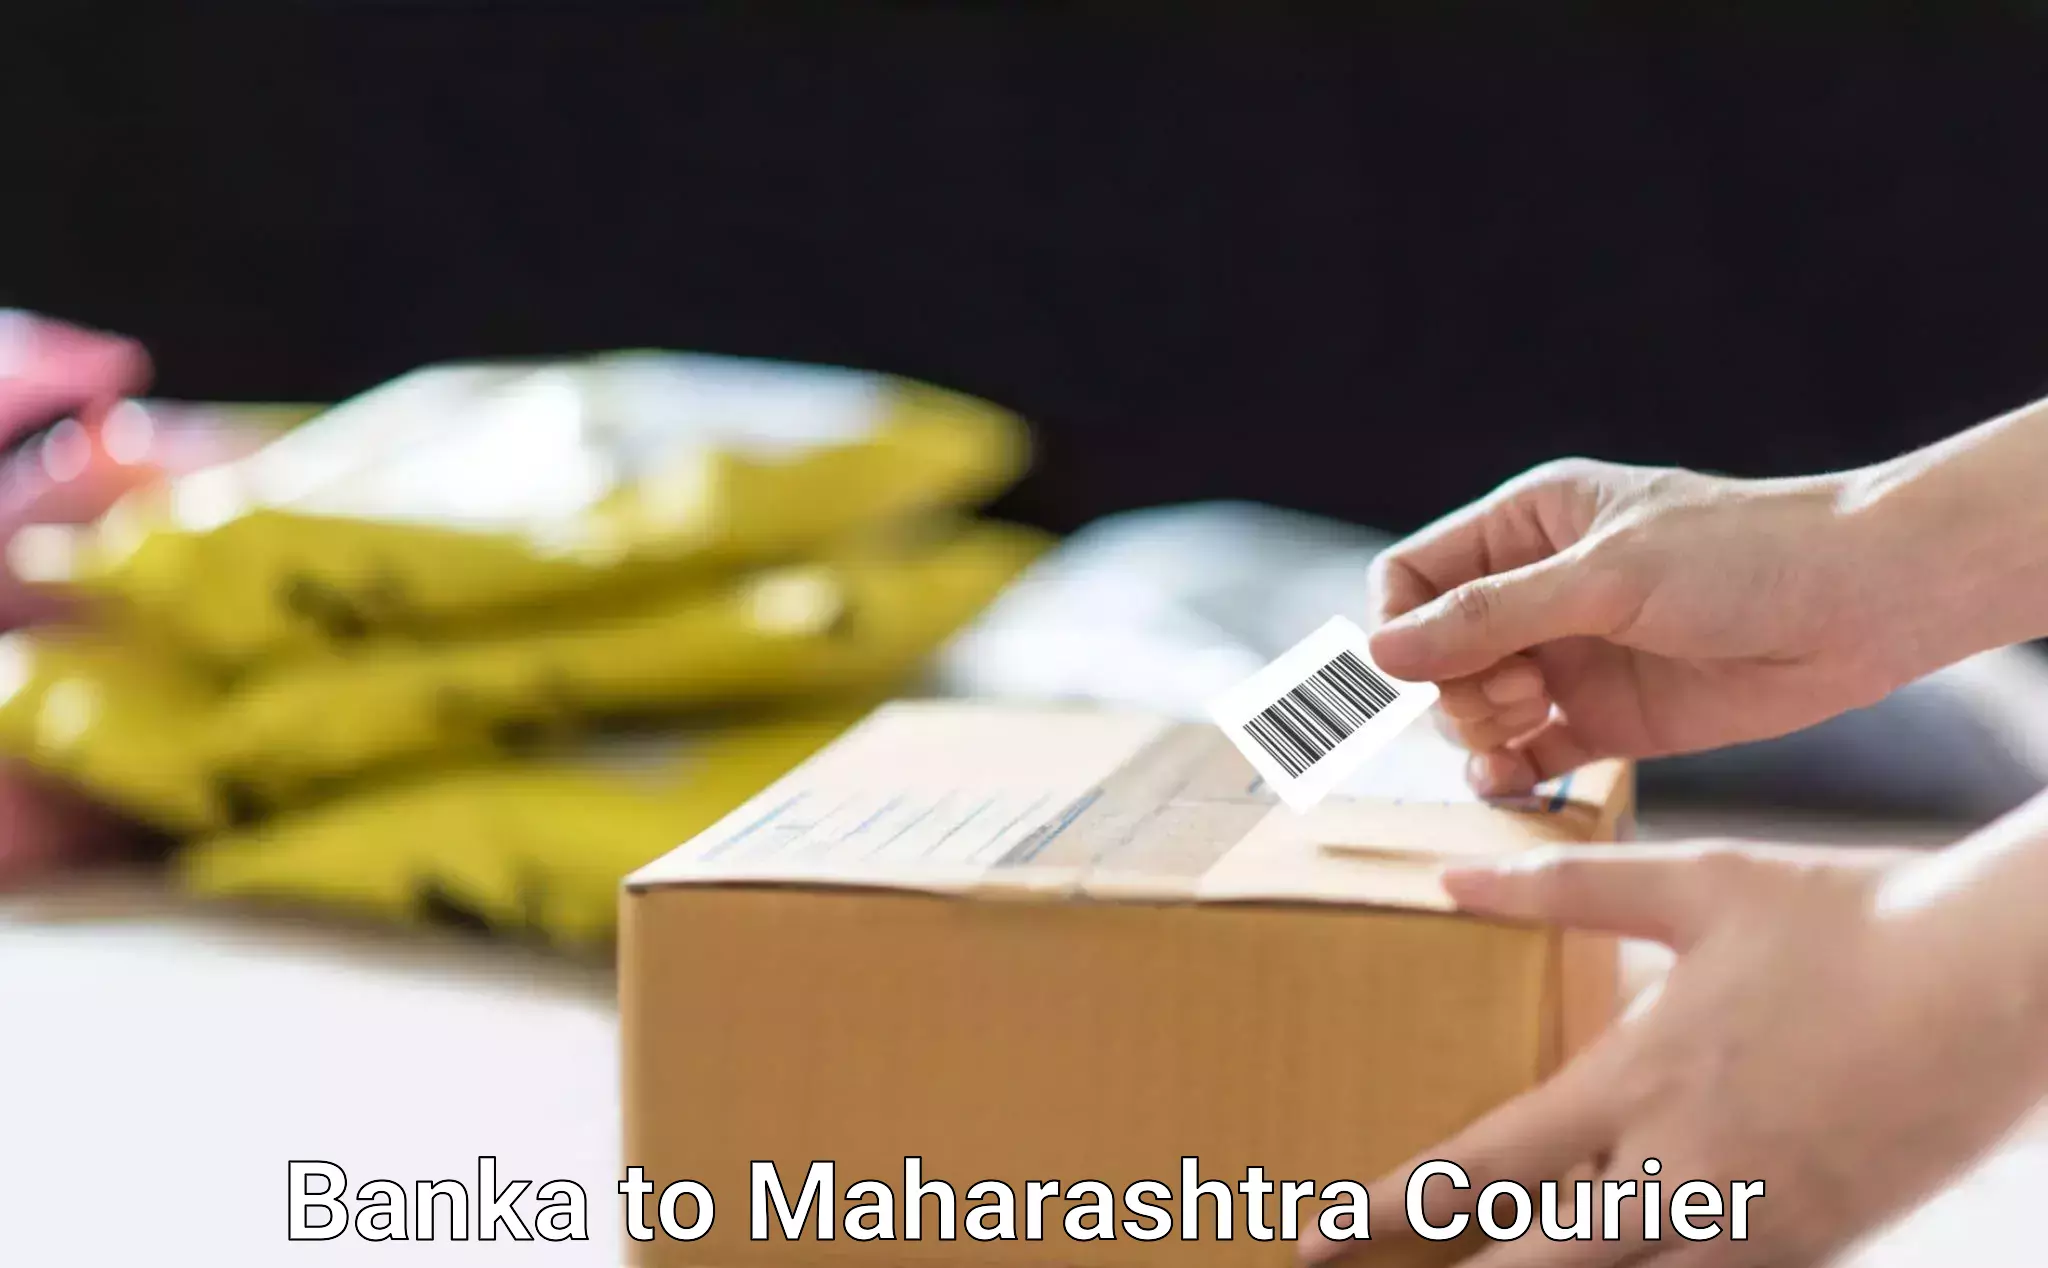 Full-service household moving Banka to Maharashtra